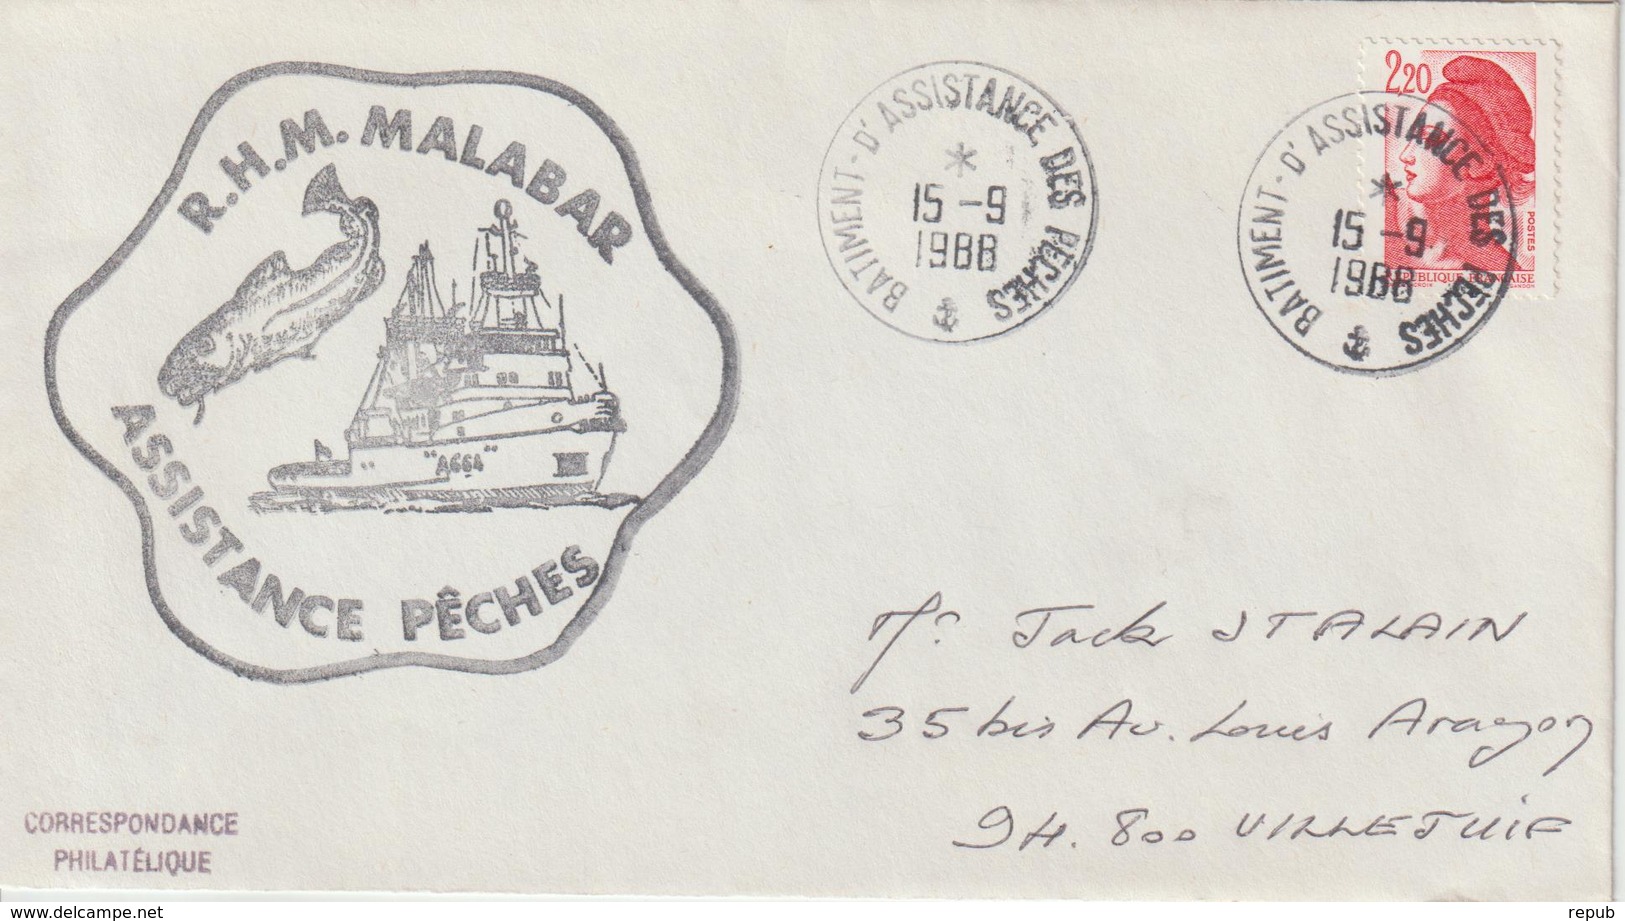 France RHM Malabar Assistance Des Peches 1988 - Seepost